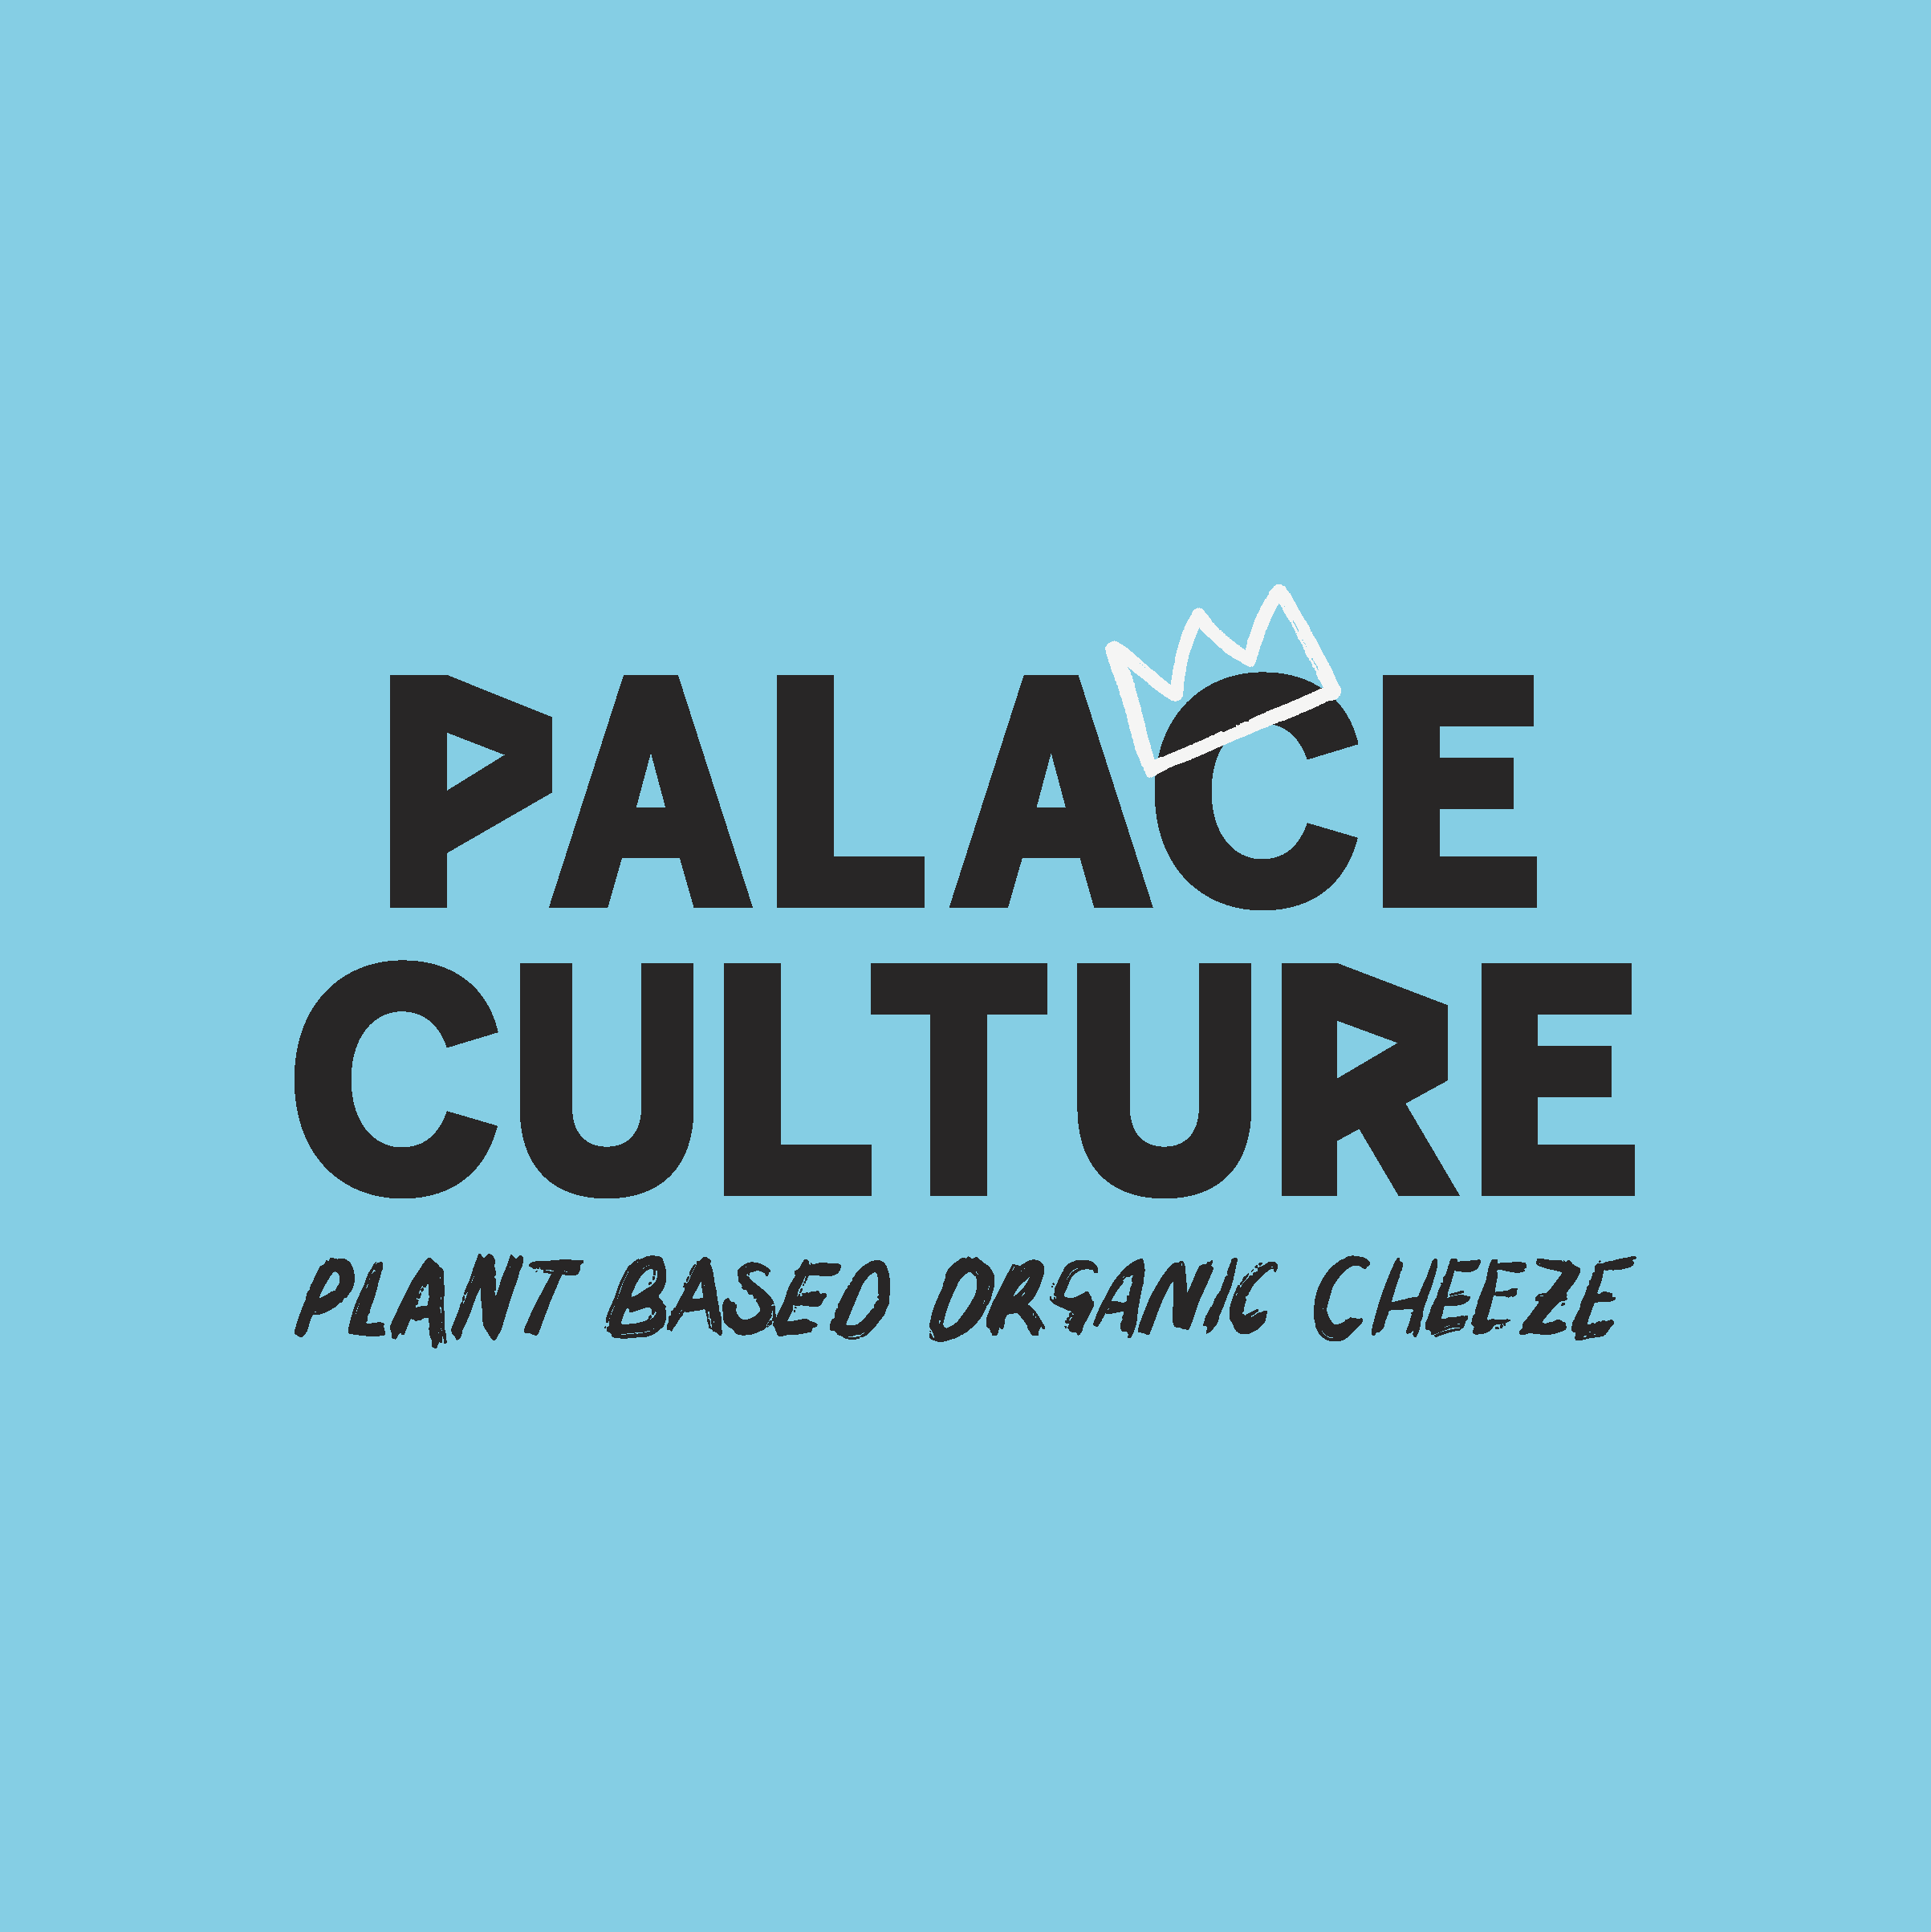 Palace culture